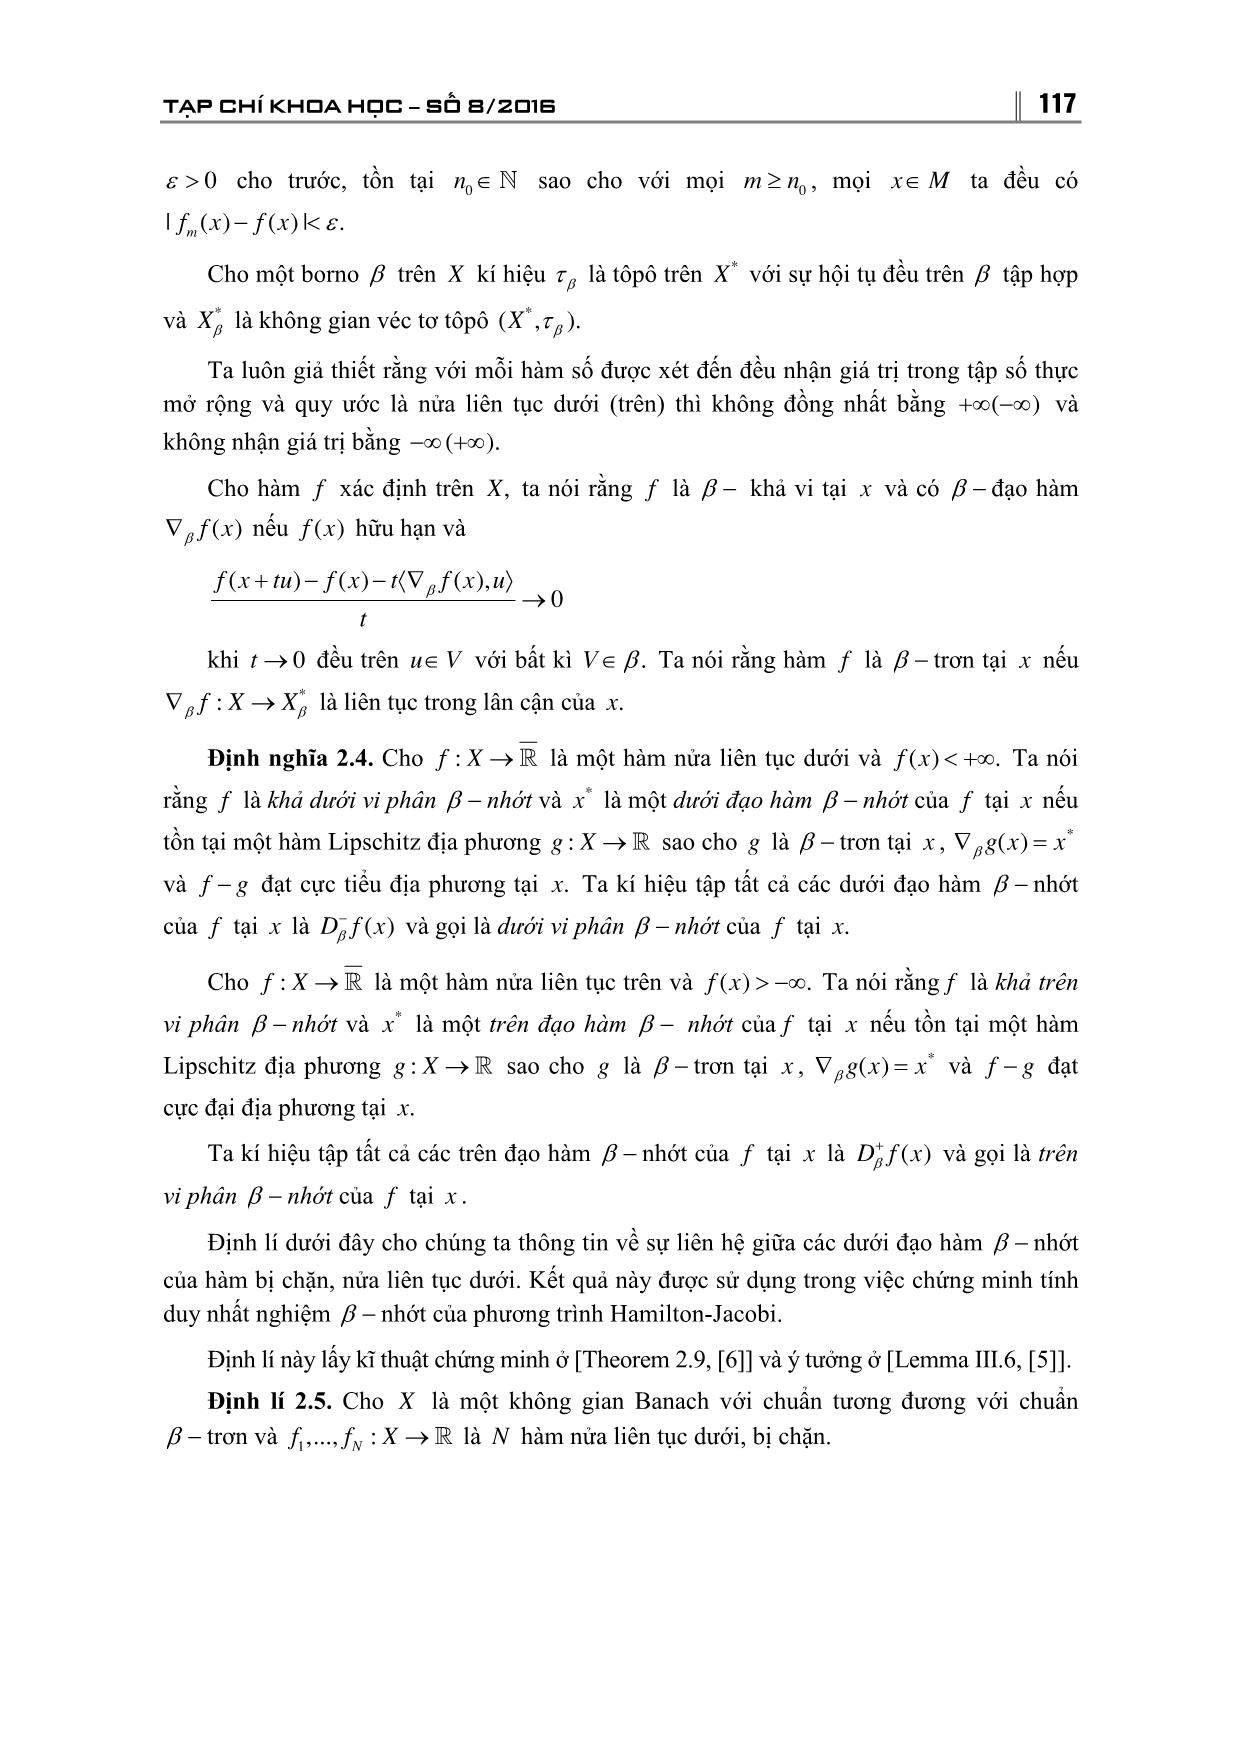 Tính duy nhất nghiệm của β - Nhớt của phương trình Hamilton-Jacobi trong không gian Banach trang 3